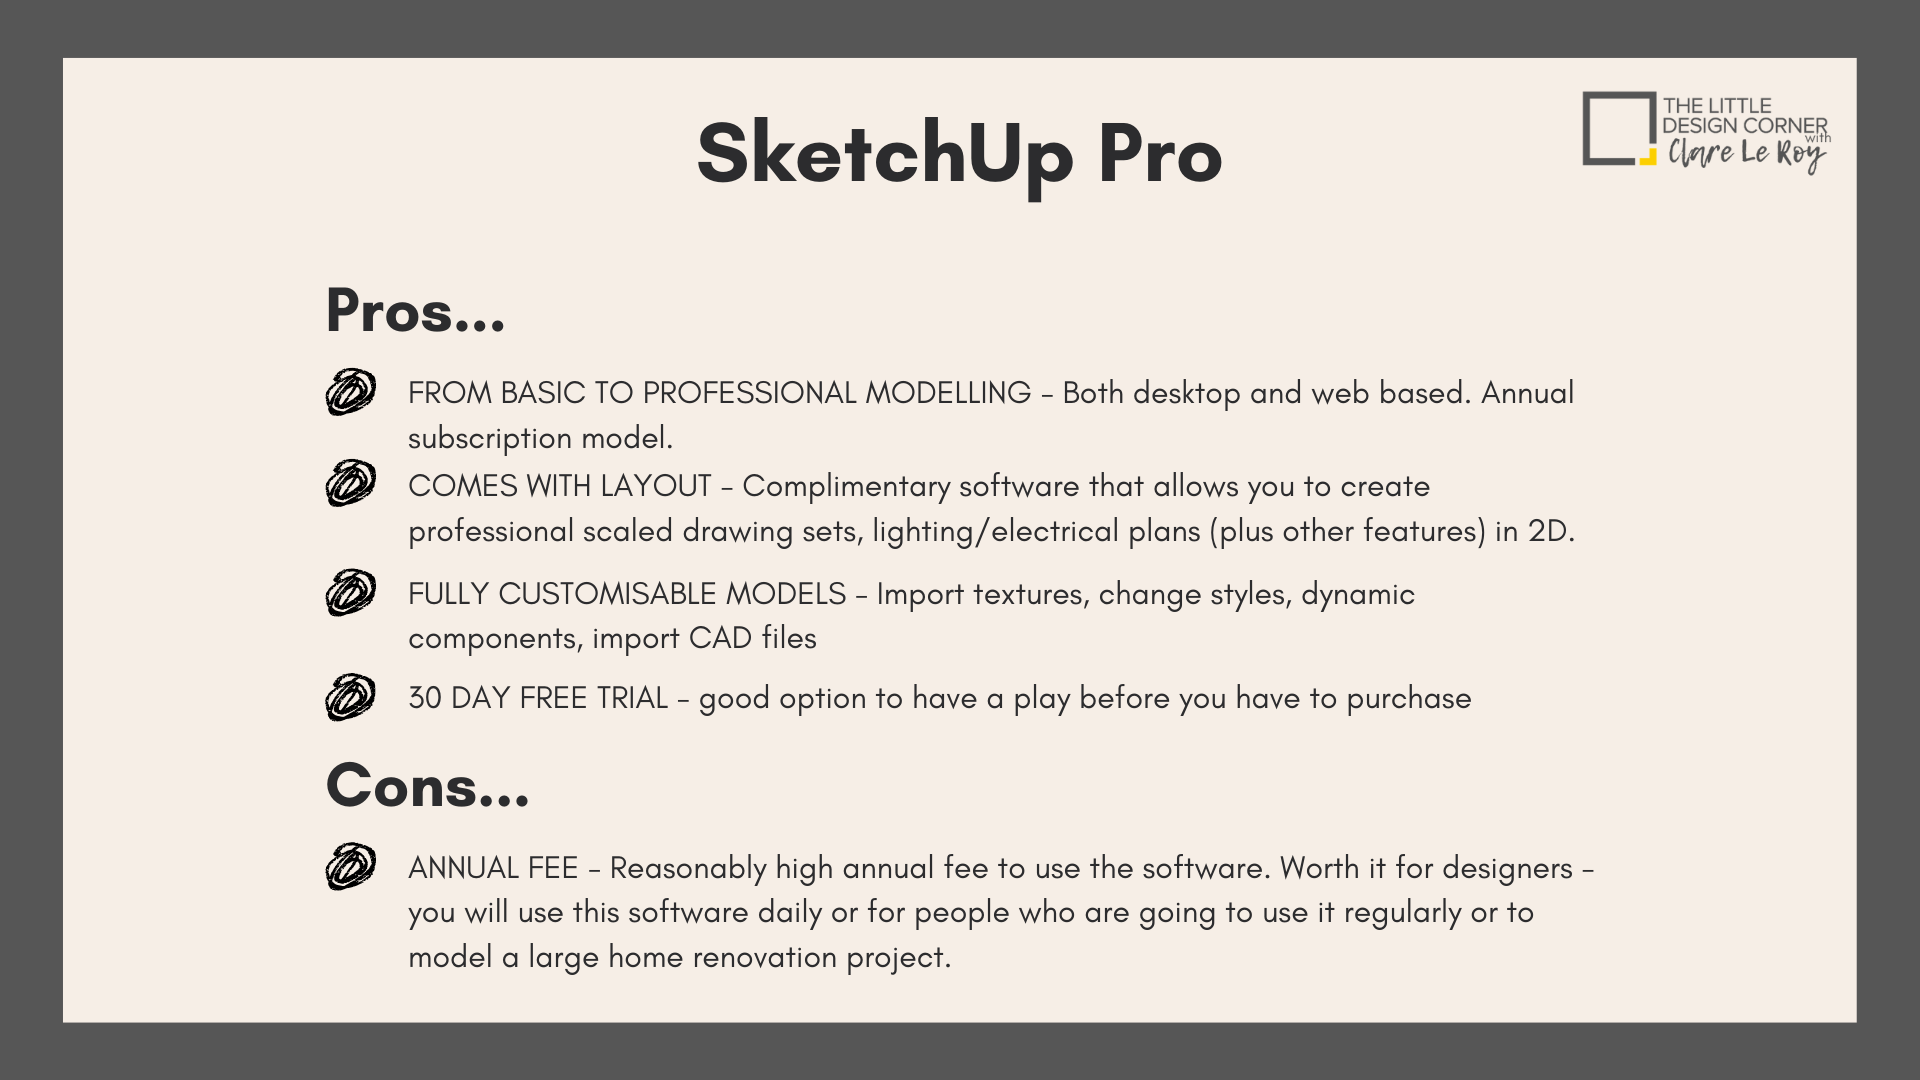 free sketchup vs sketchup pro